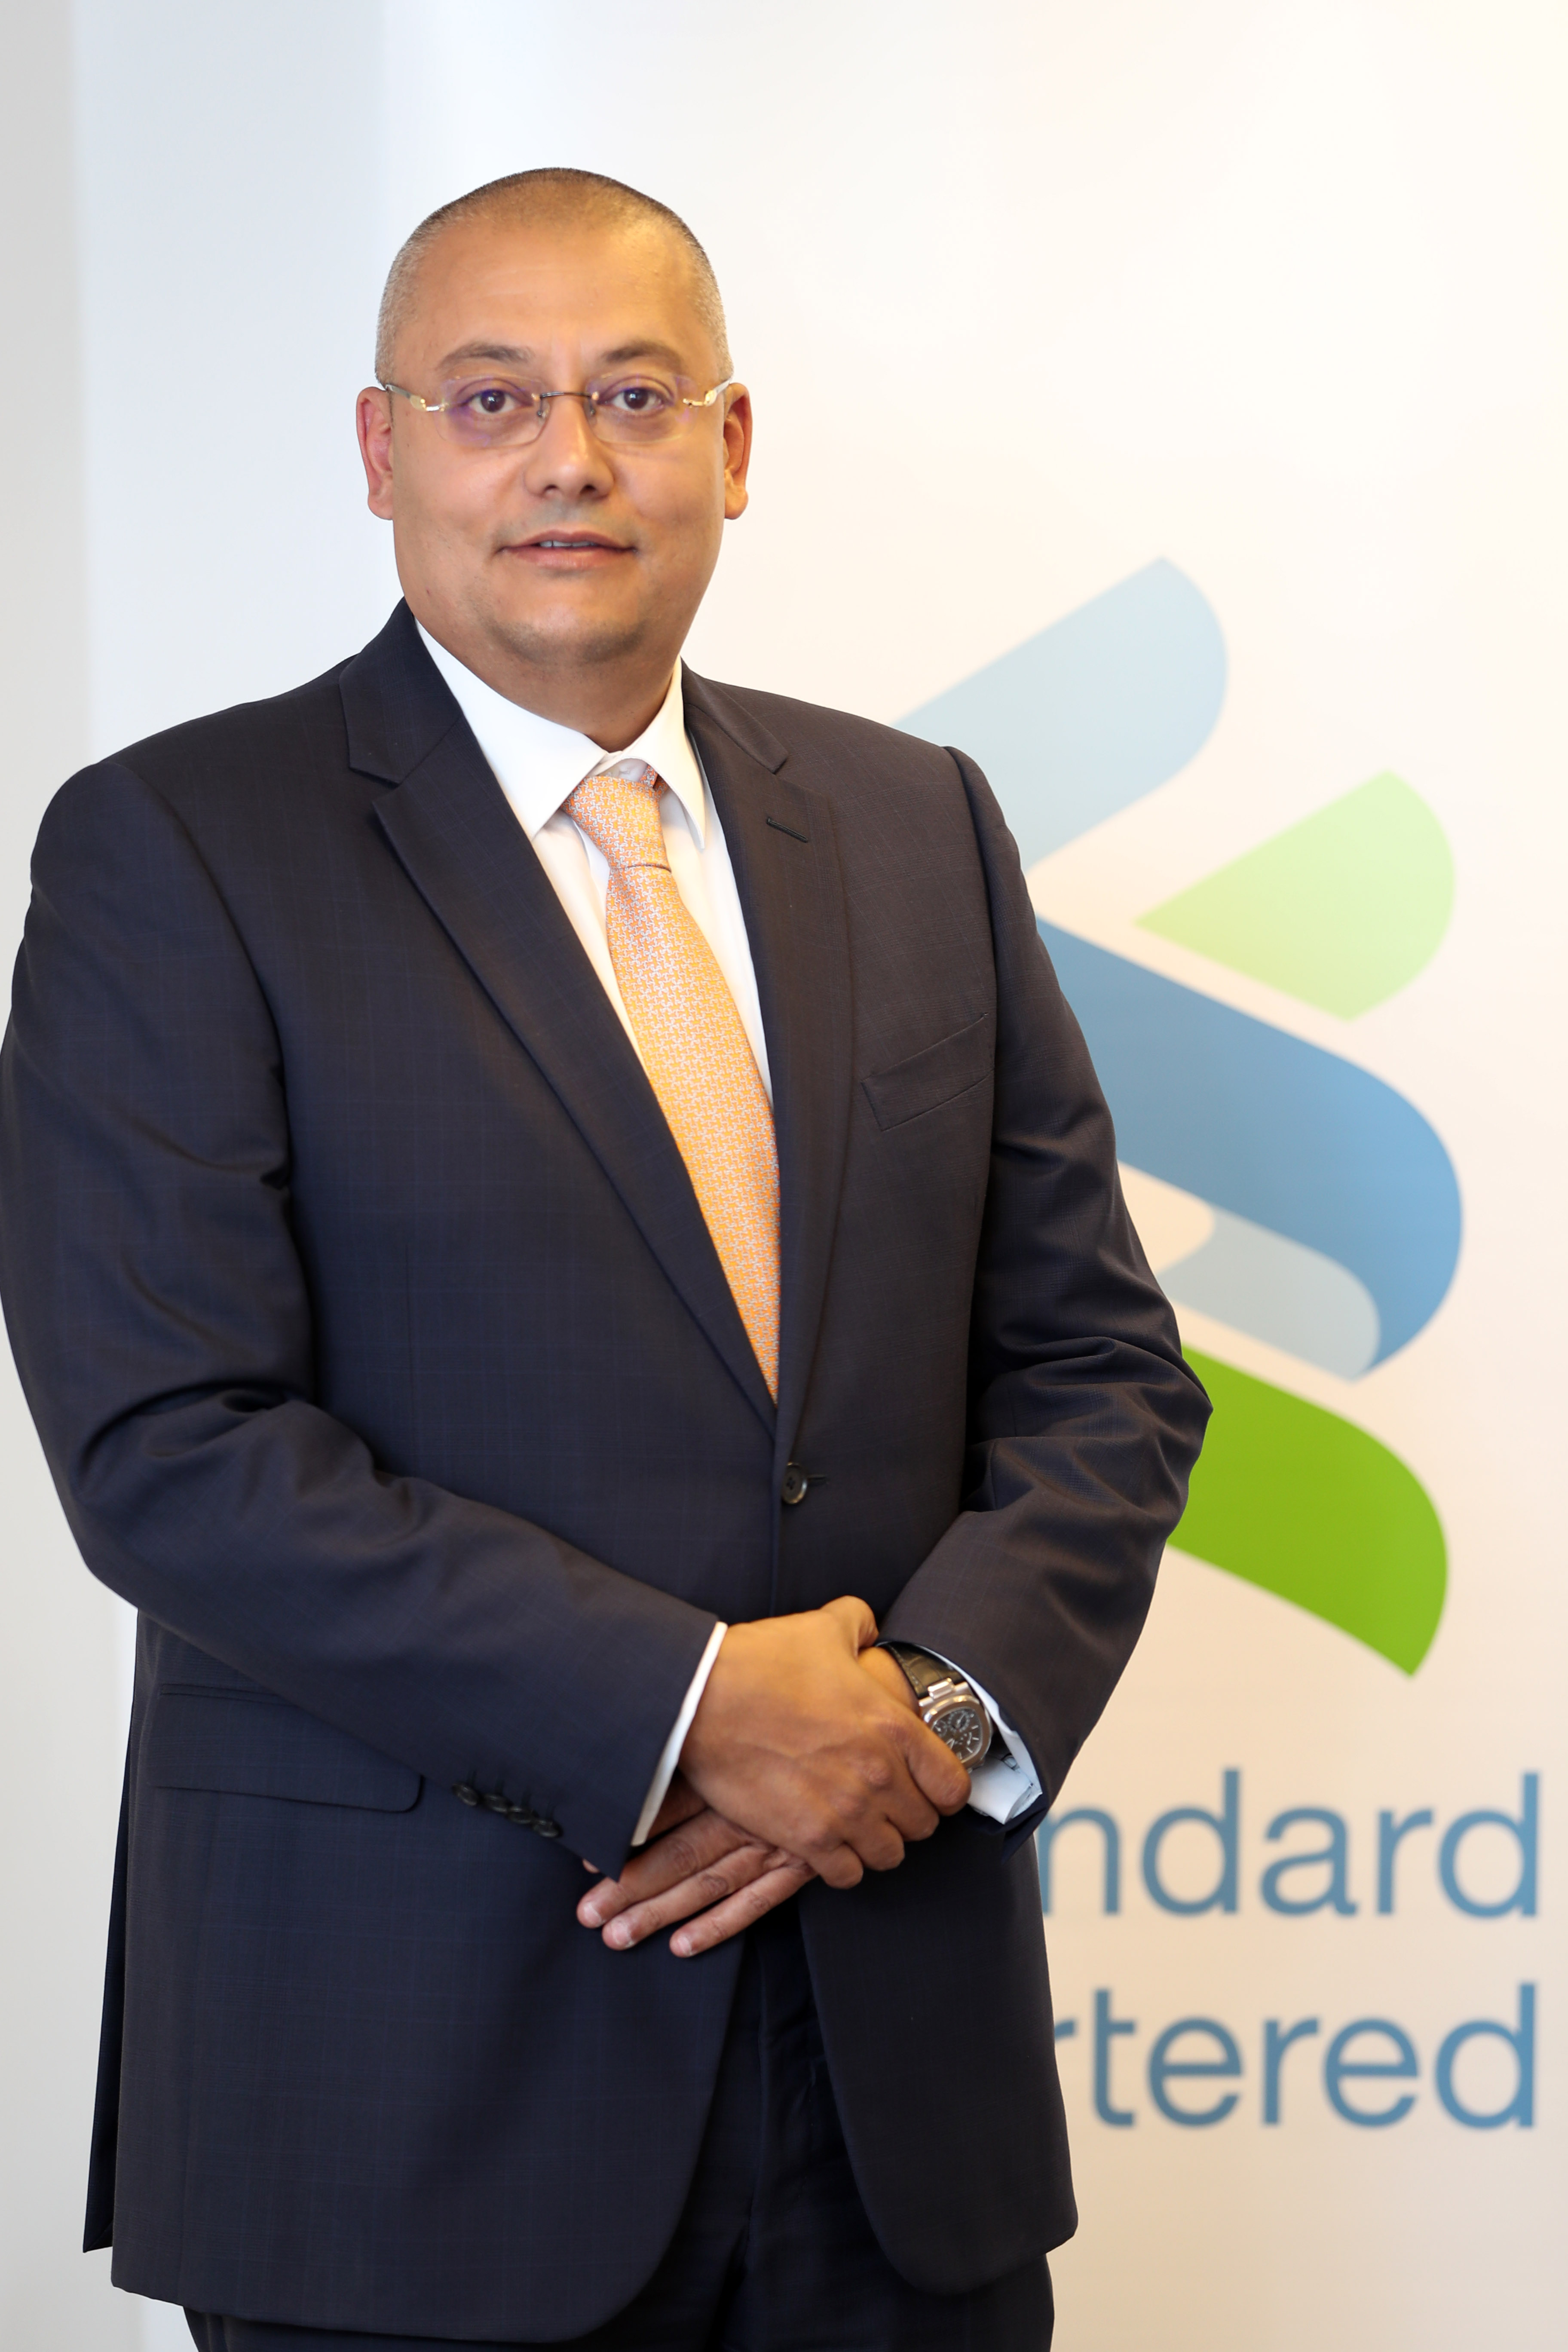 بنك ستاندرد تشارترد يعلن عن رئيس تنفيذي جديد في الأردن.مهند مكحل، الرئيس التنفيذي لبنك ستاندرد تشارترد الأردن